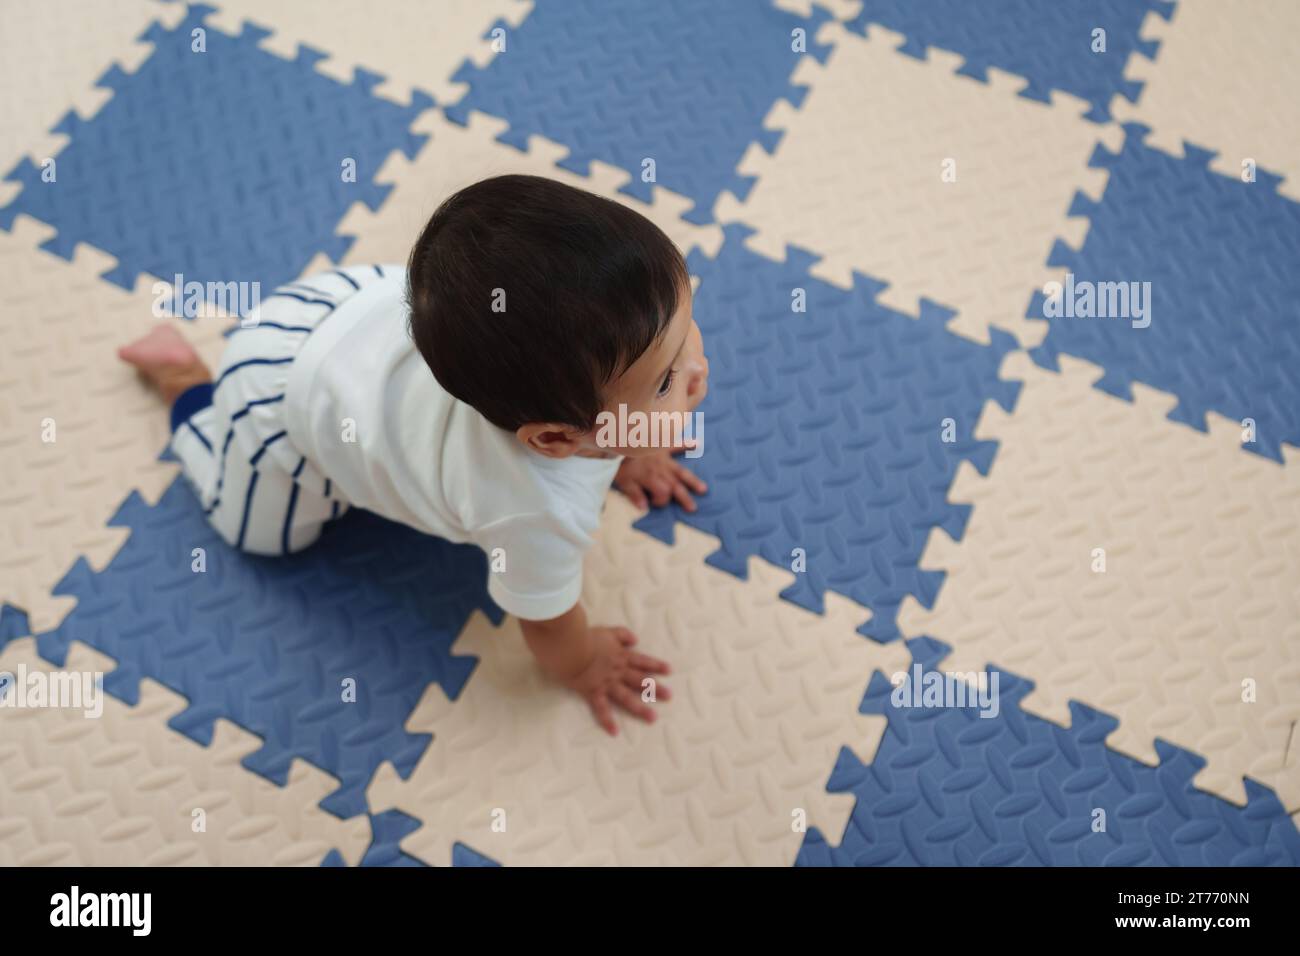 Draufsicht des Babys, das auf der Spielmatte oder dem Puzzle-Boden krabbelt Stockfoto